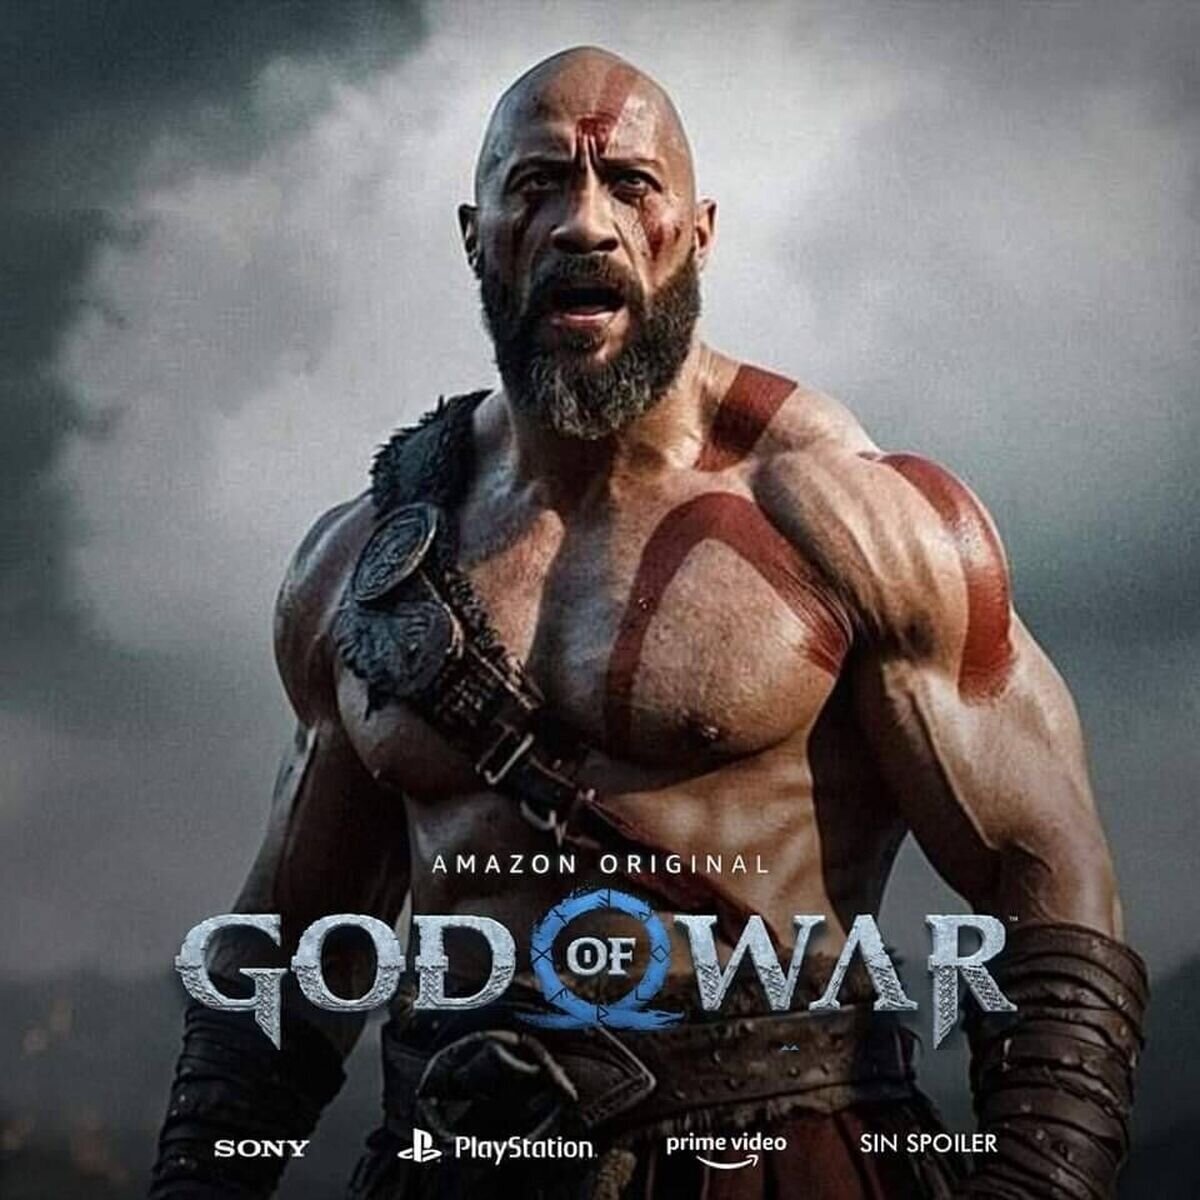 Te gustaría ver a Dwayne Johnson interpretando a Kratos en la serie de God Of War?